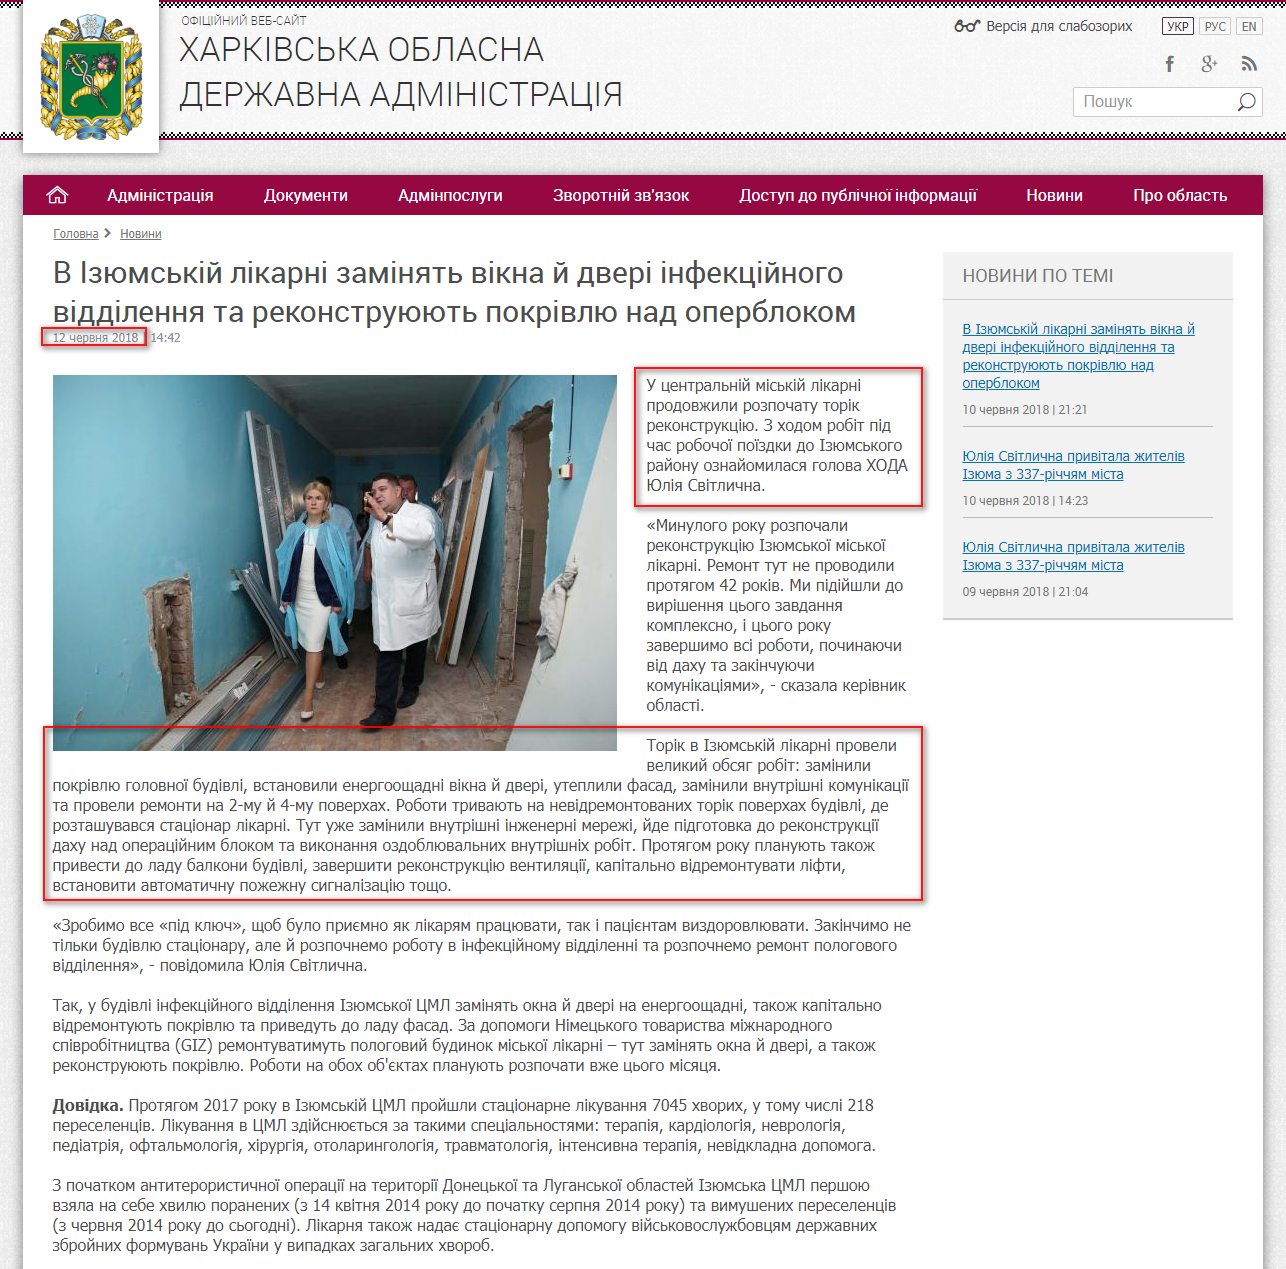 http://kharkivoda.gov.ua/news/93324